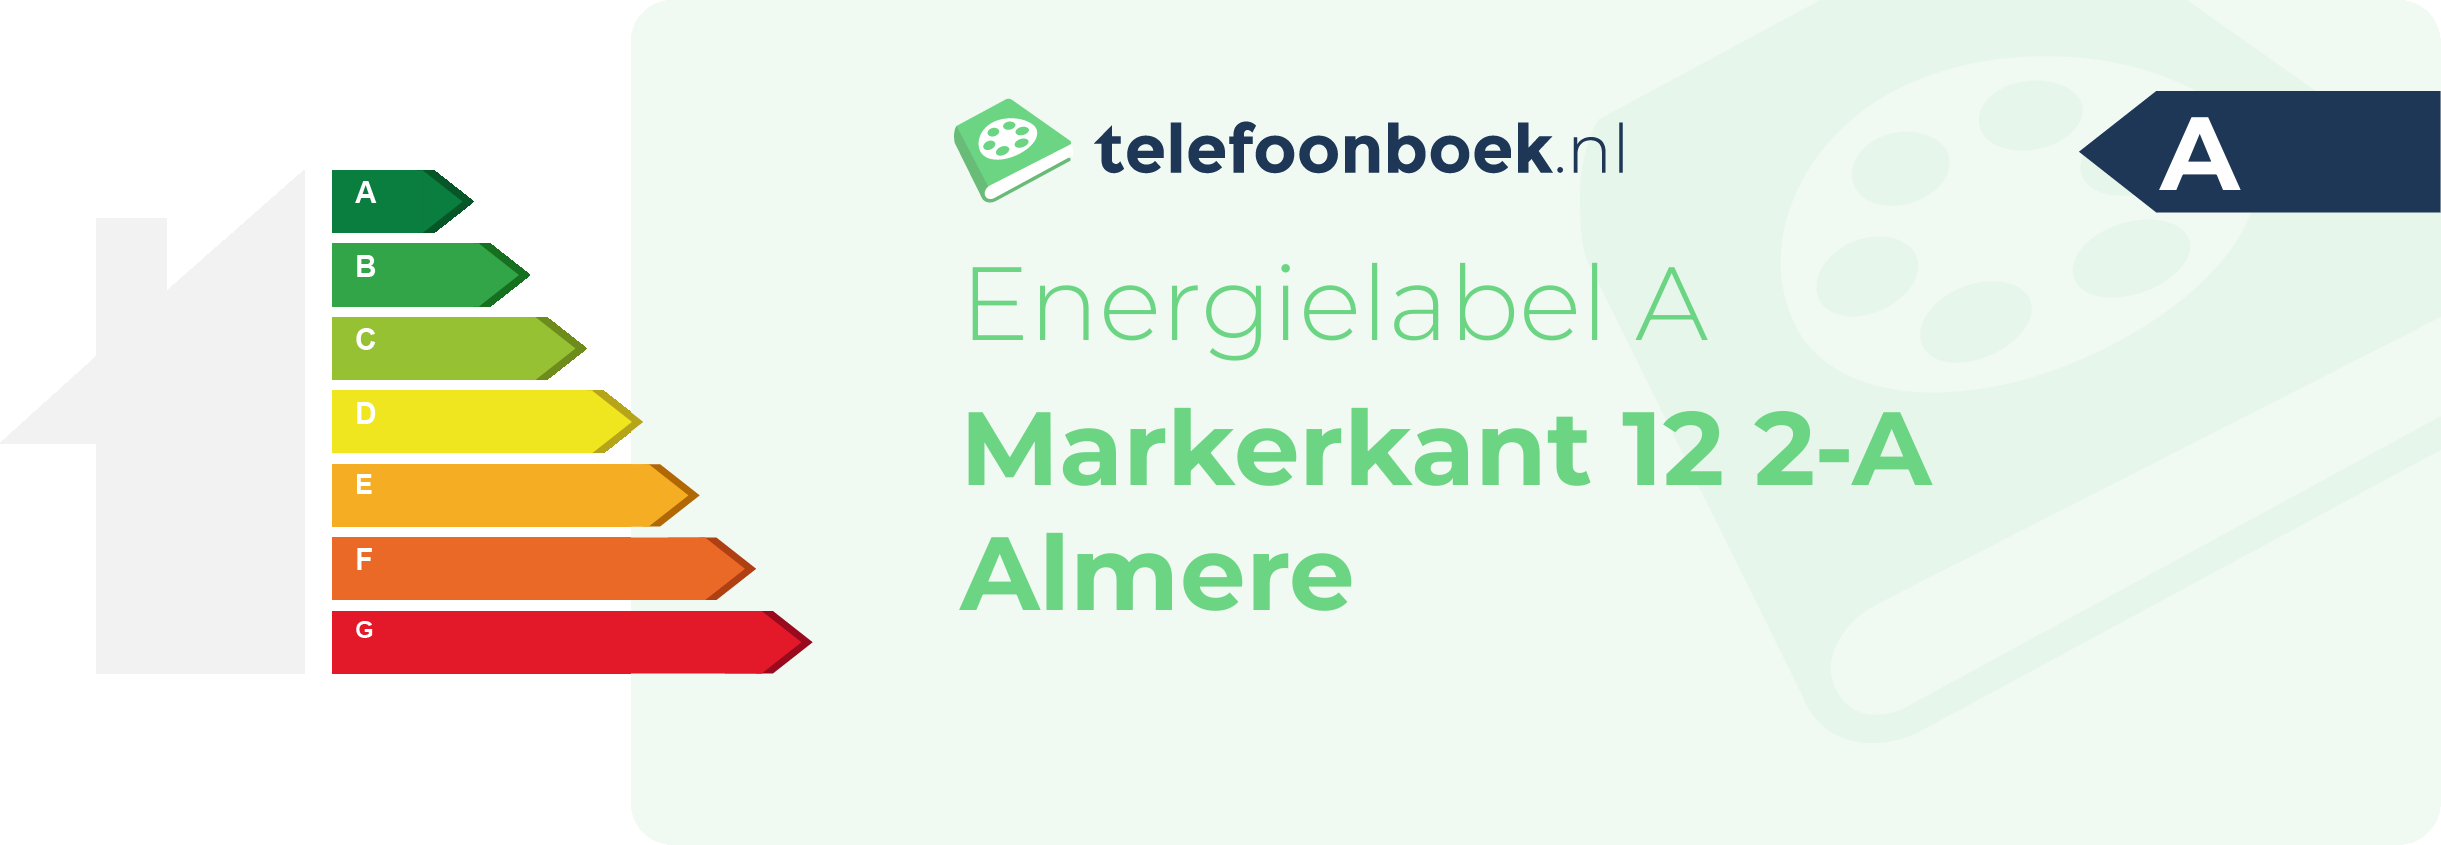 Energielabel Markerkant 12 2-A Almere